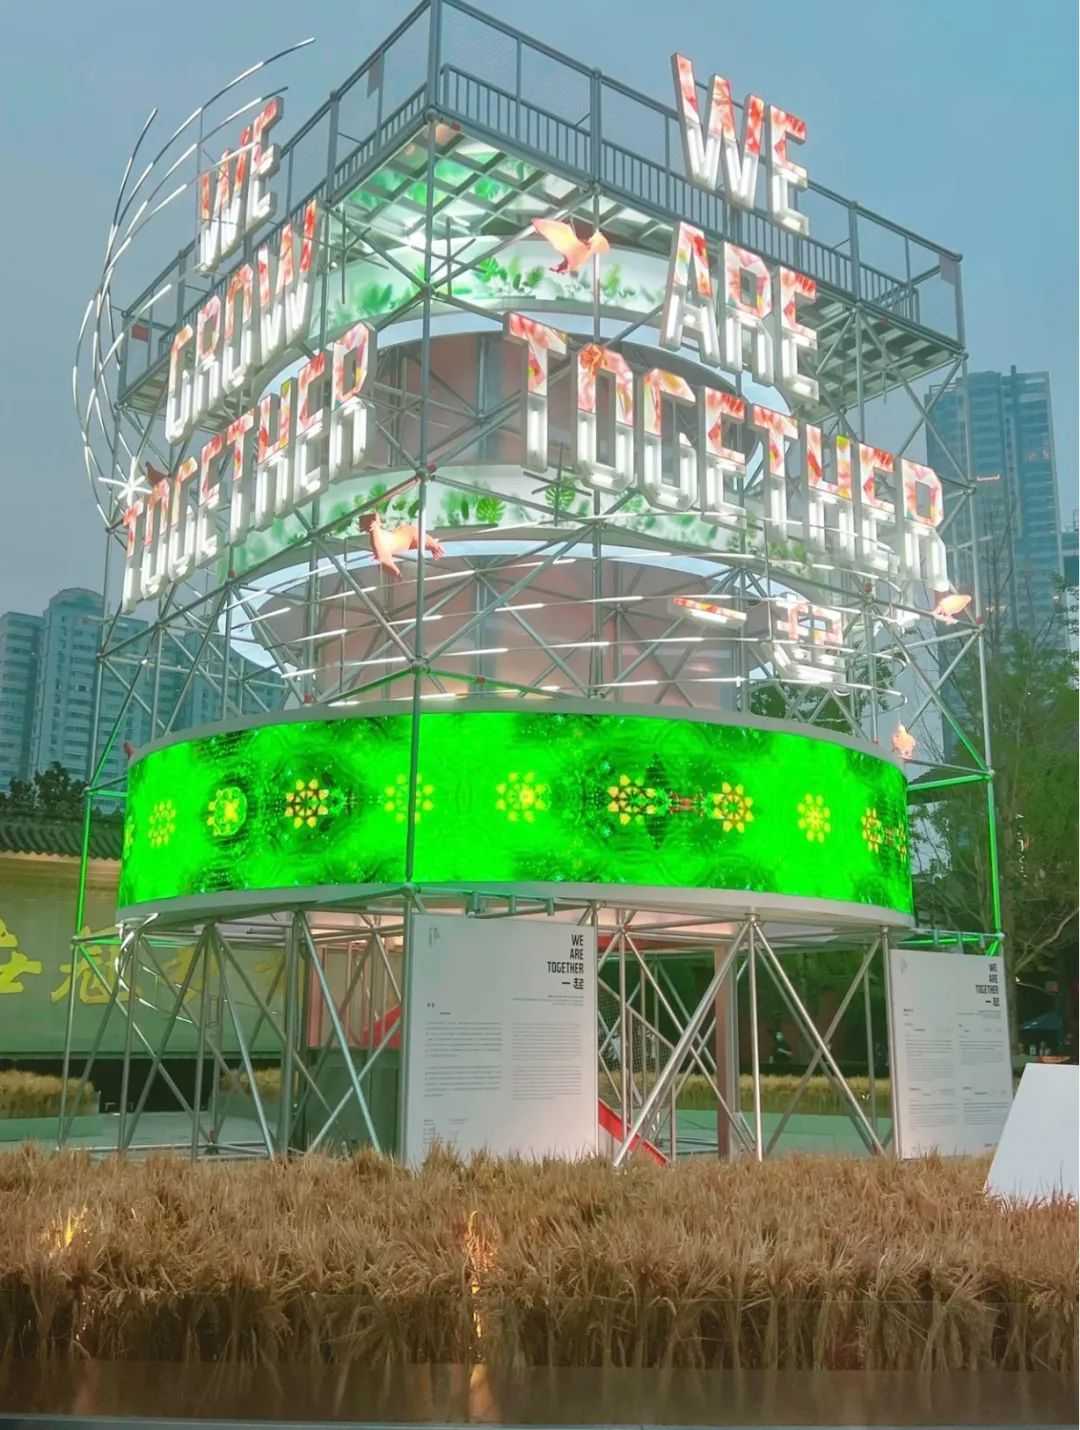 成都这个7周年庆典活动策划的大型公共艺术装置是对未来的美好期许